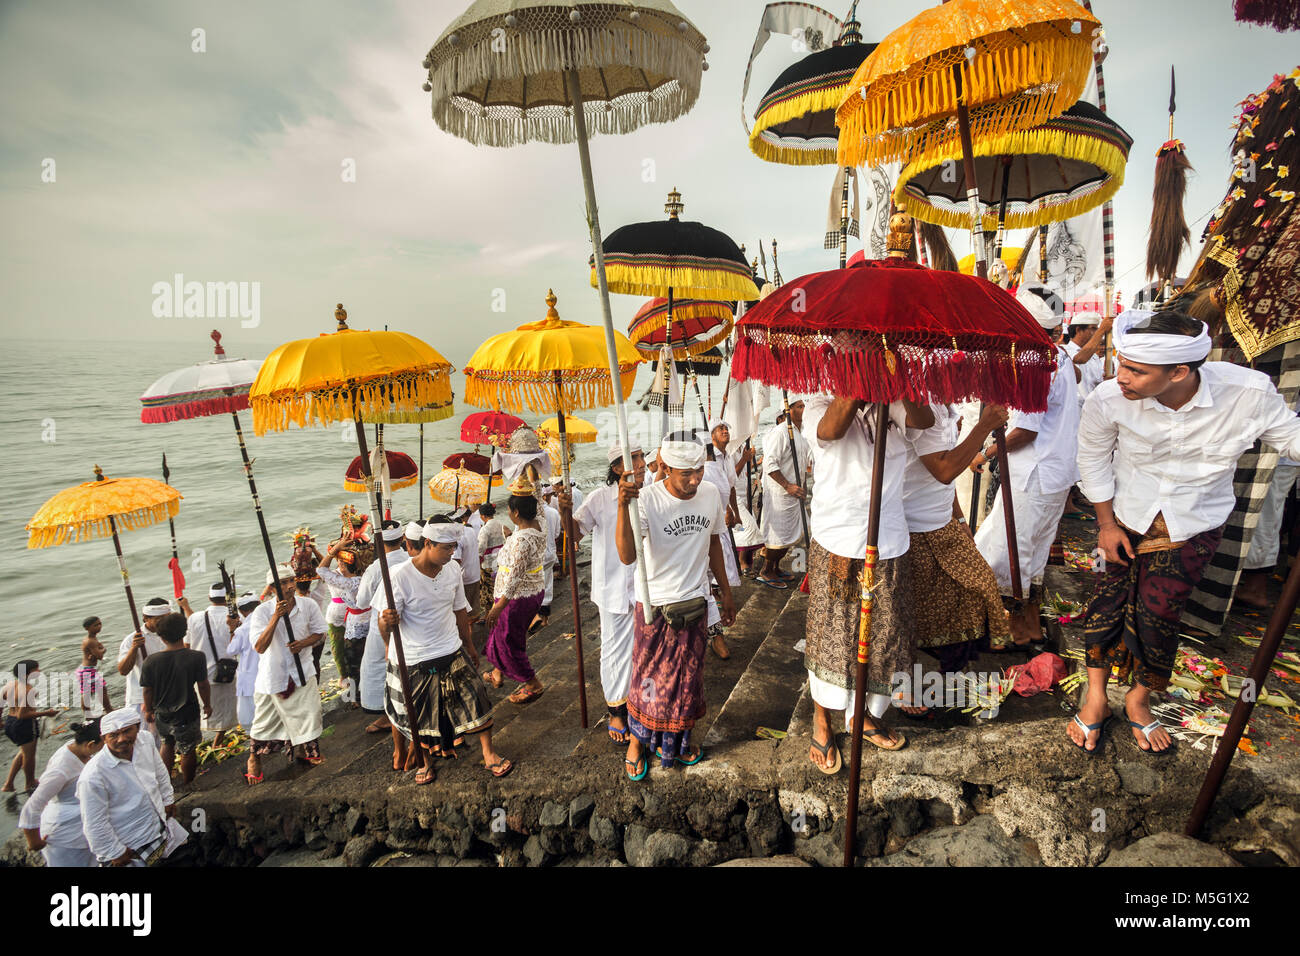 Religiöse Versammlung und religiösen Masse der balinesischen Hindu's mit bunten Religiösen sonnenschirme Melasti Zeremonie auf einer Bali Beach. Traditionelle Rituale Stockfoto